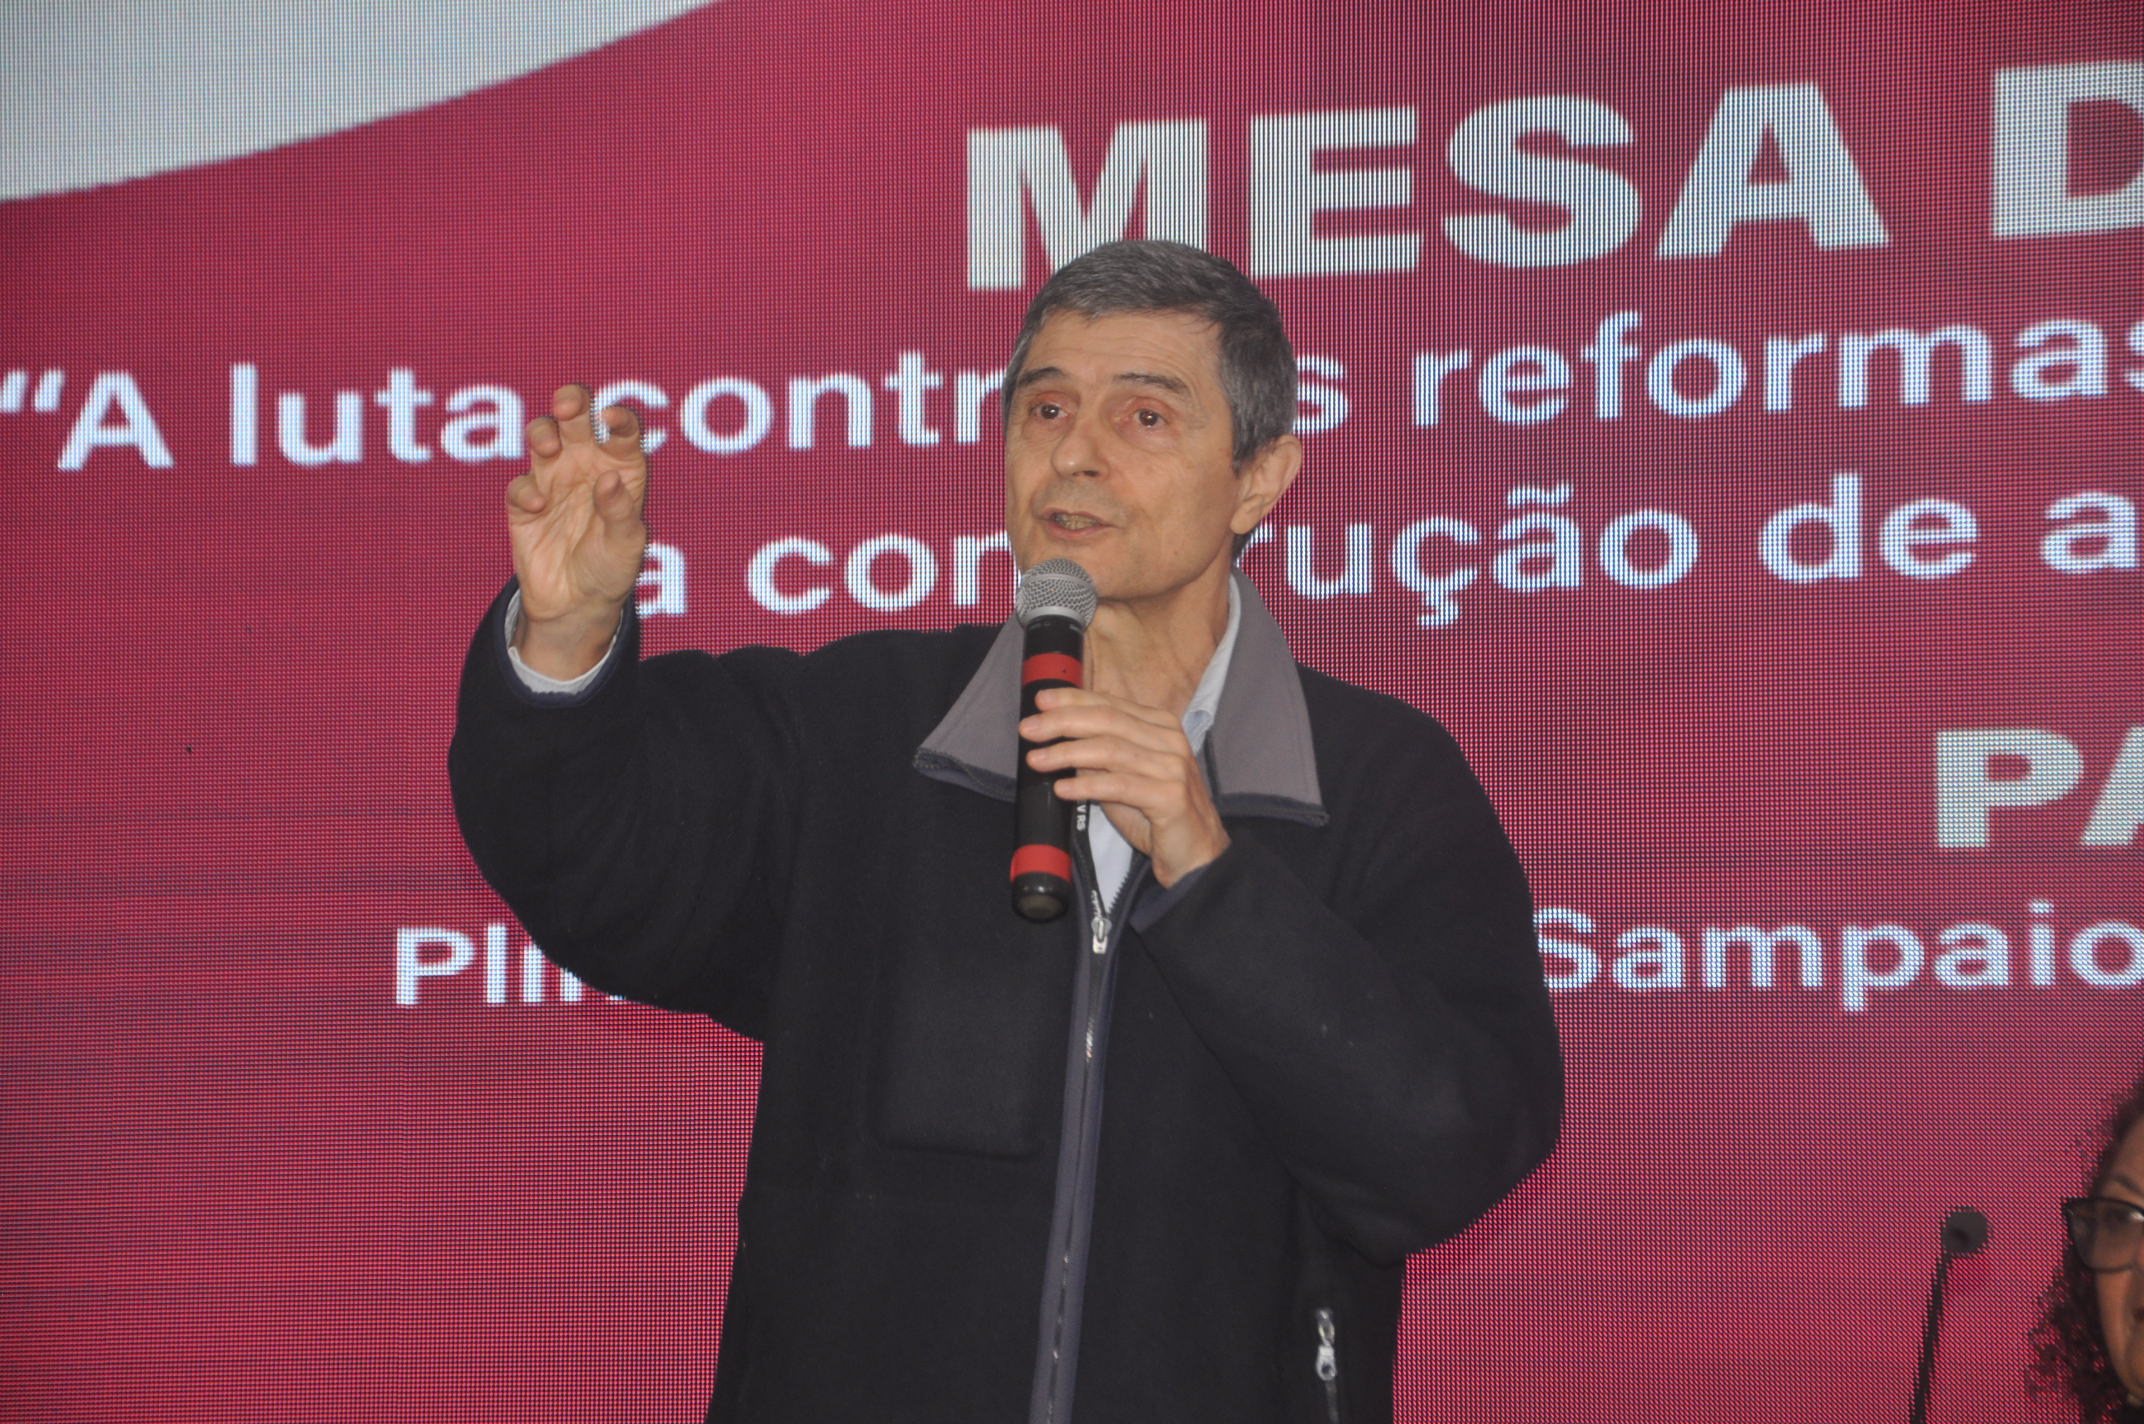  “É importante atacar não só o efeito do problema, que é o Bolsonaro, mas a causa, que é o capitalismo” aponta Plinio Sampaio Júnior sobre eleições no Brasil